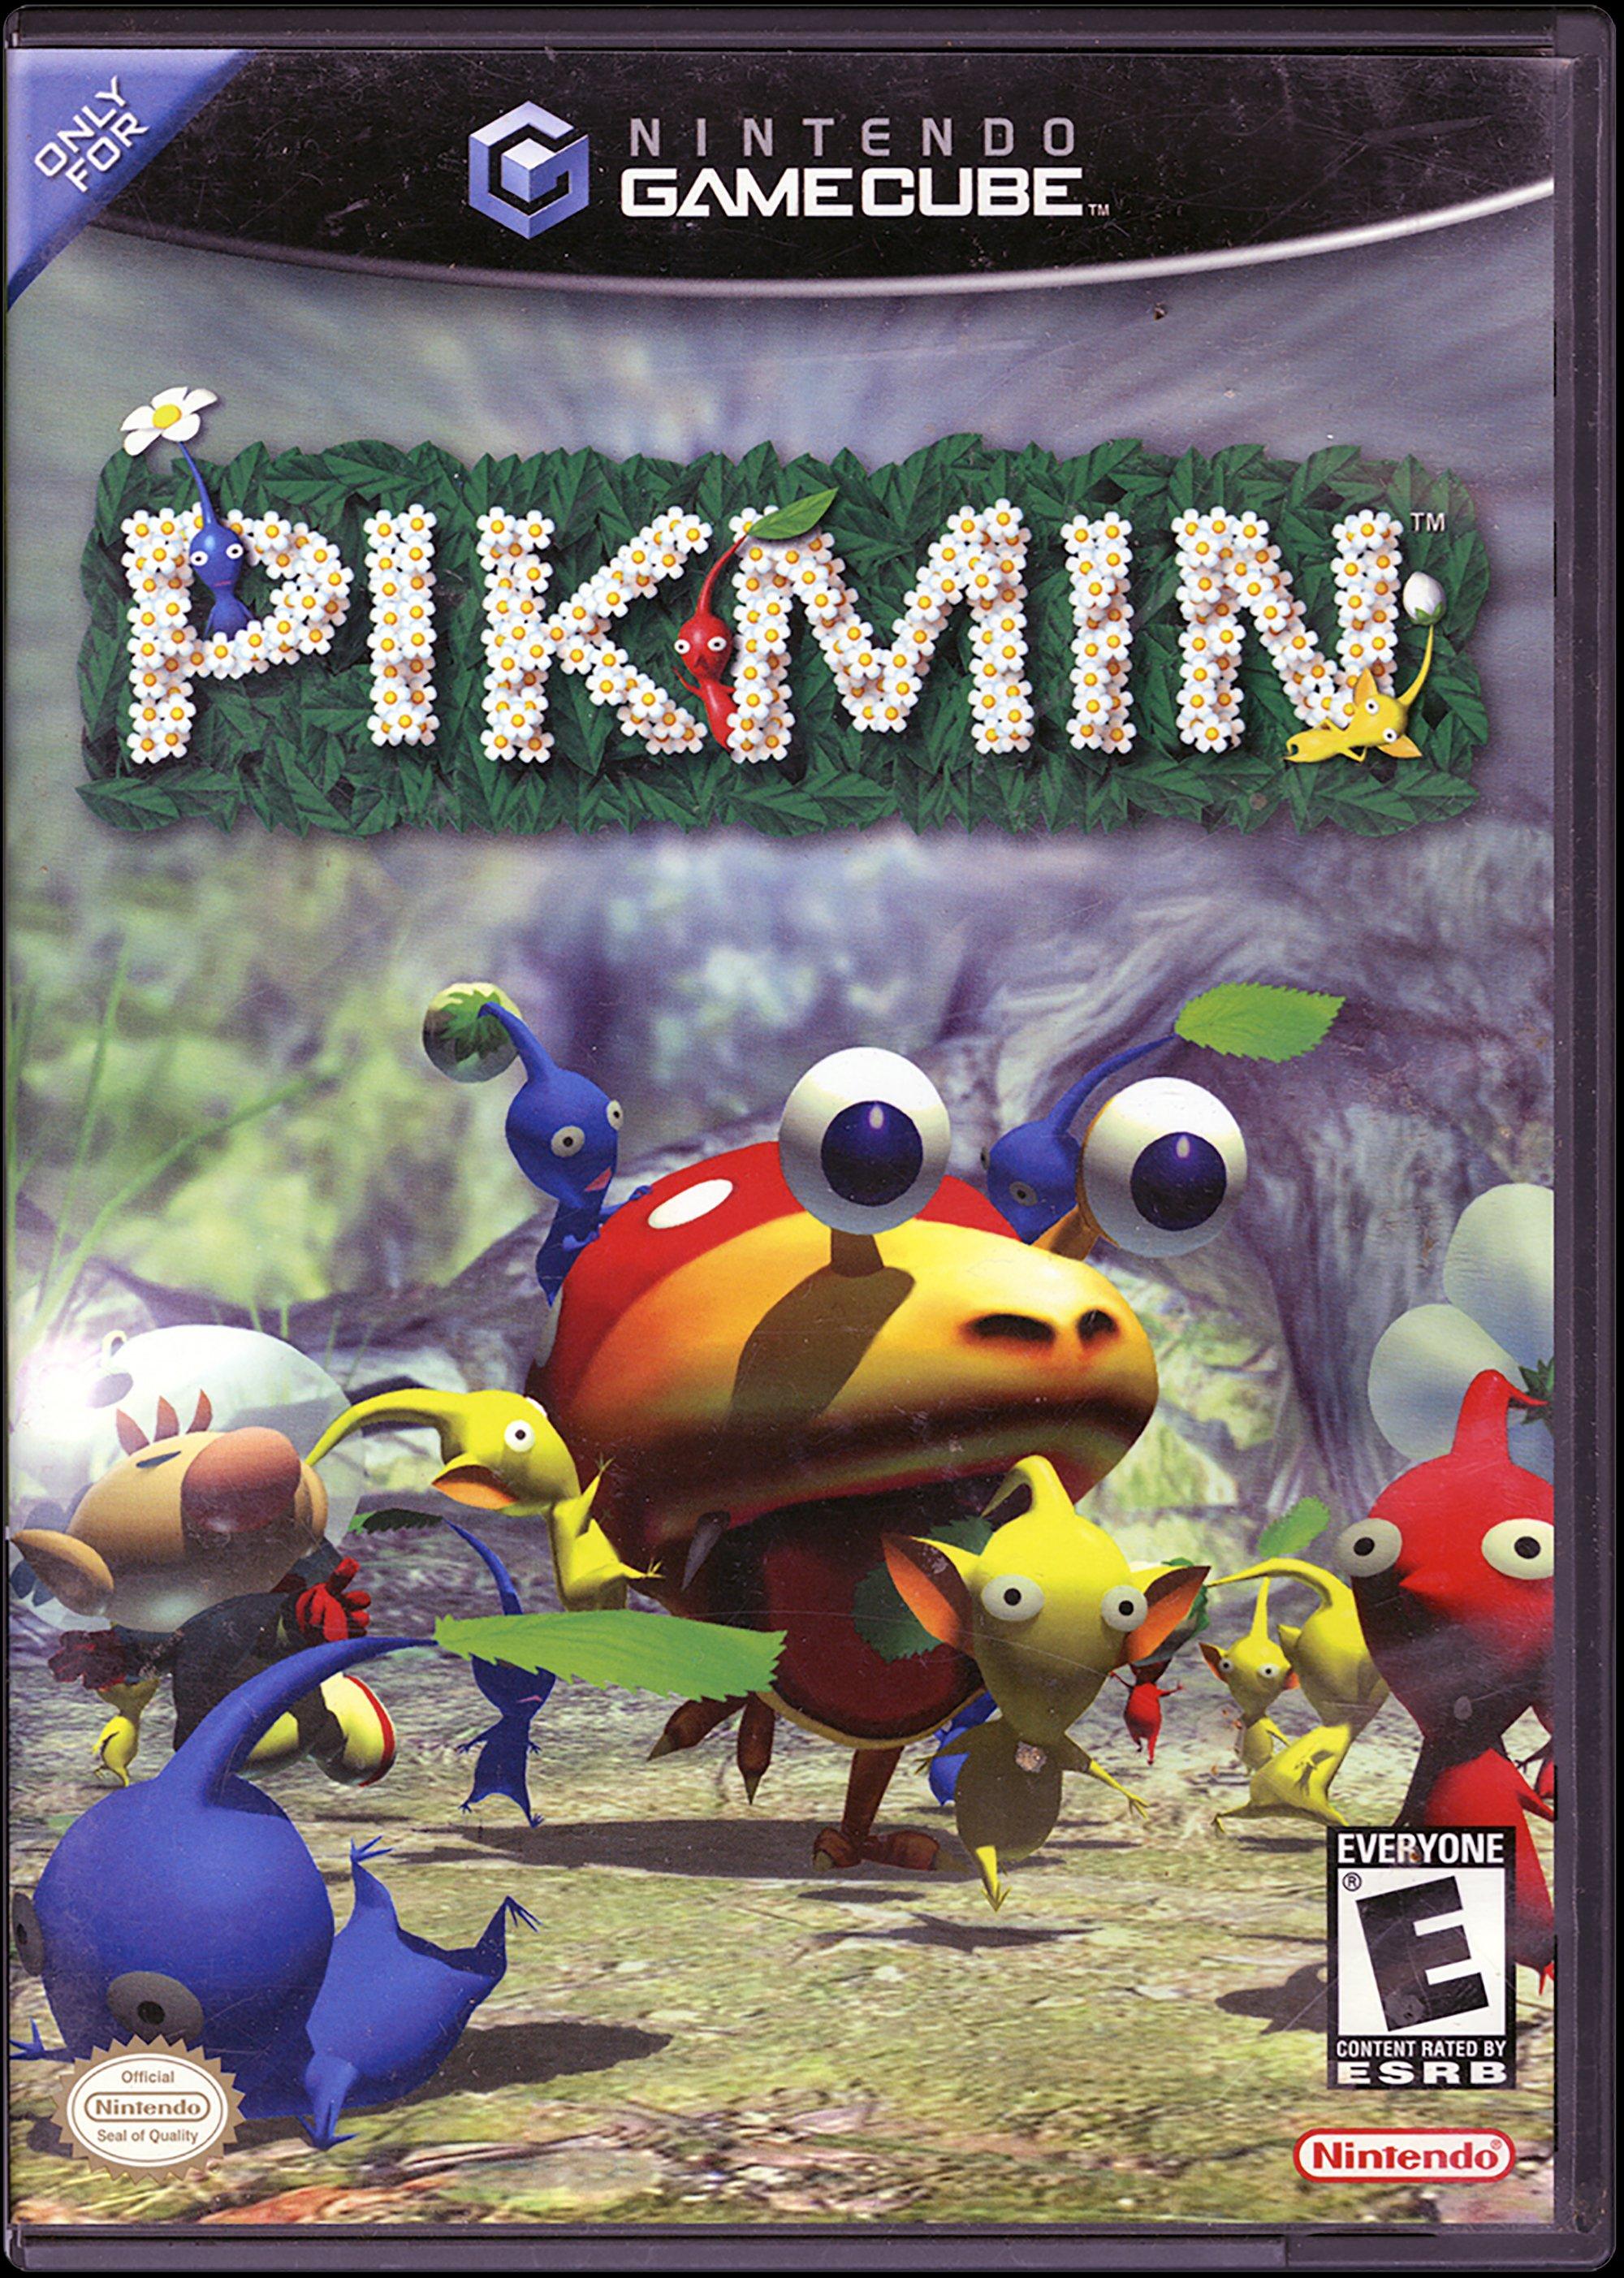 Pikmin - GameCube